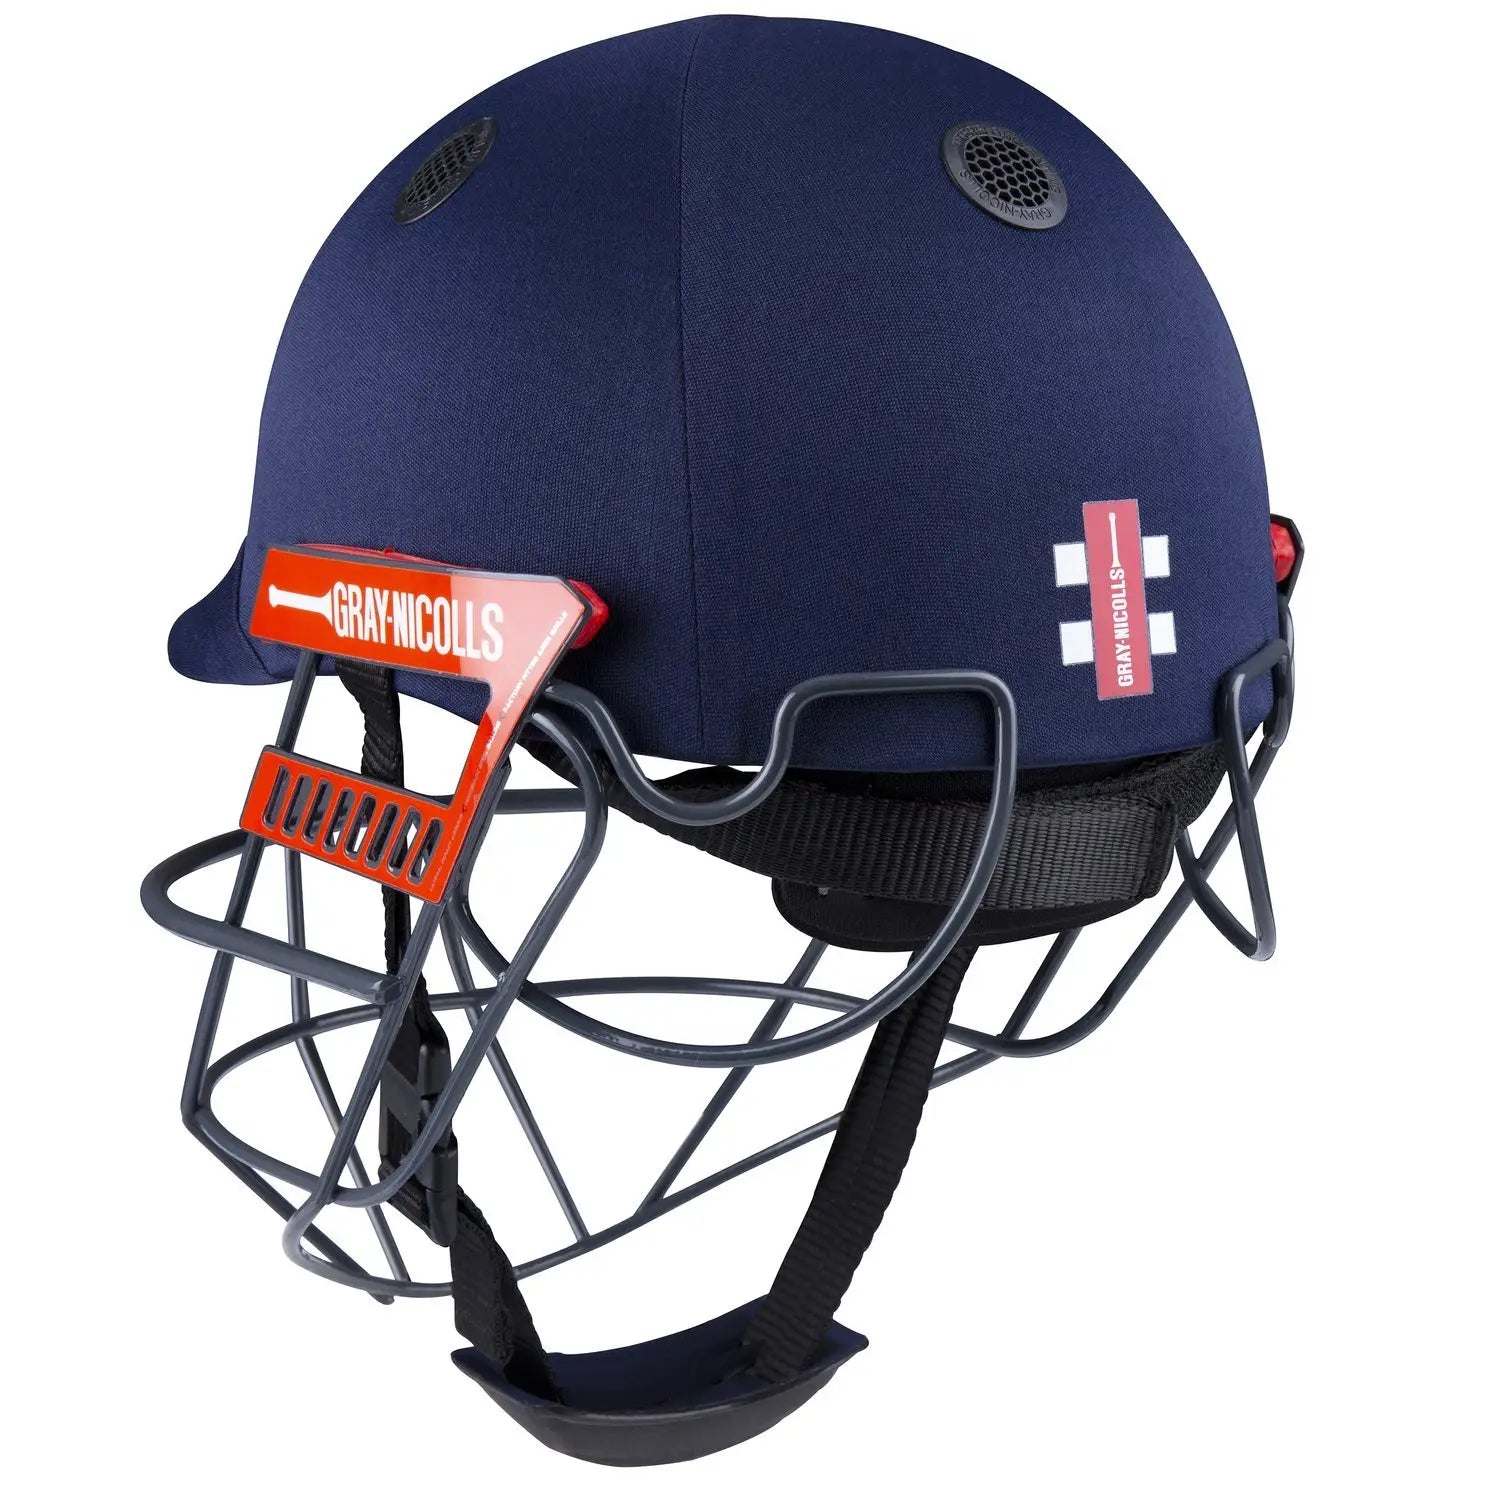 Gray Nicolls Ultimate 360 Pro Cricket Helmet Navy Unrivalled Comfort - Medium - HELMETS & HEADGEAR